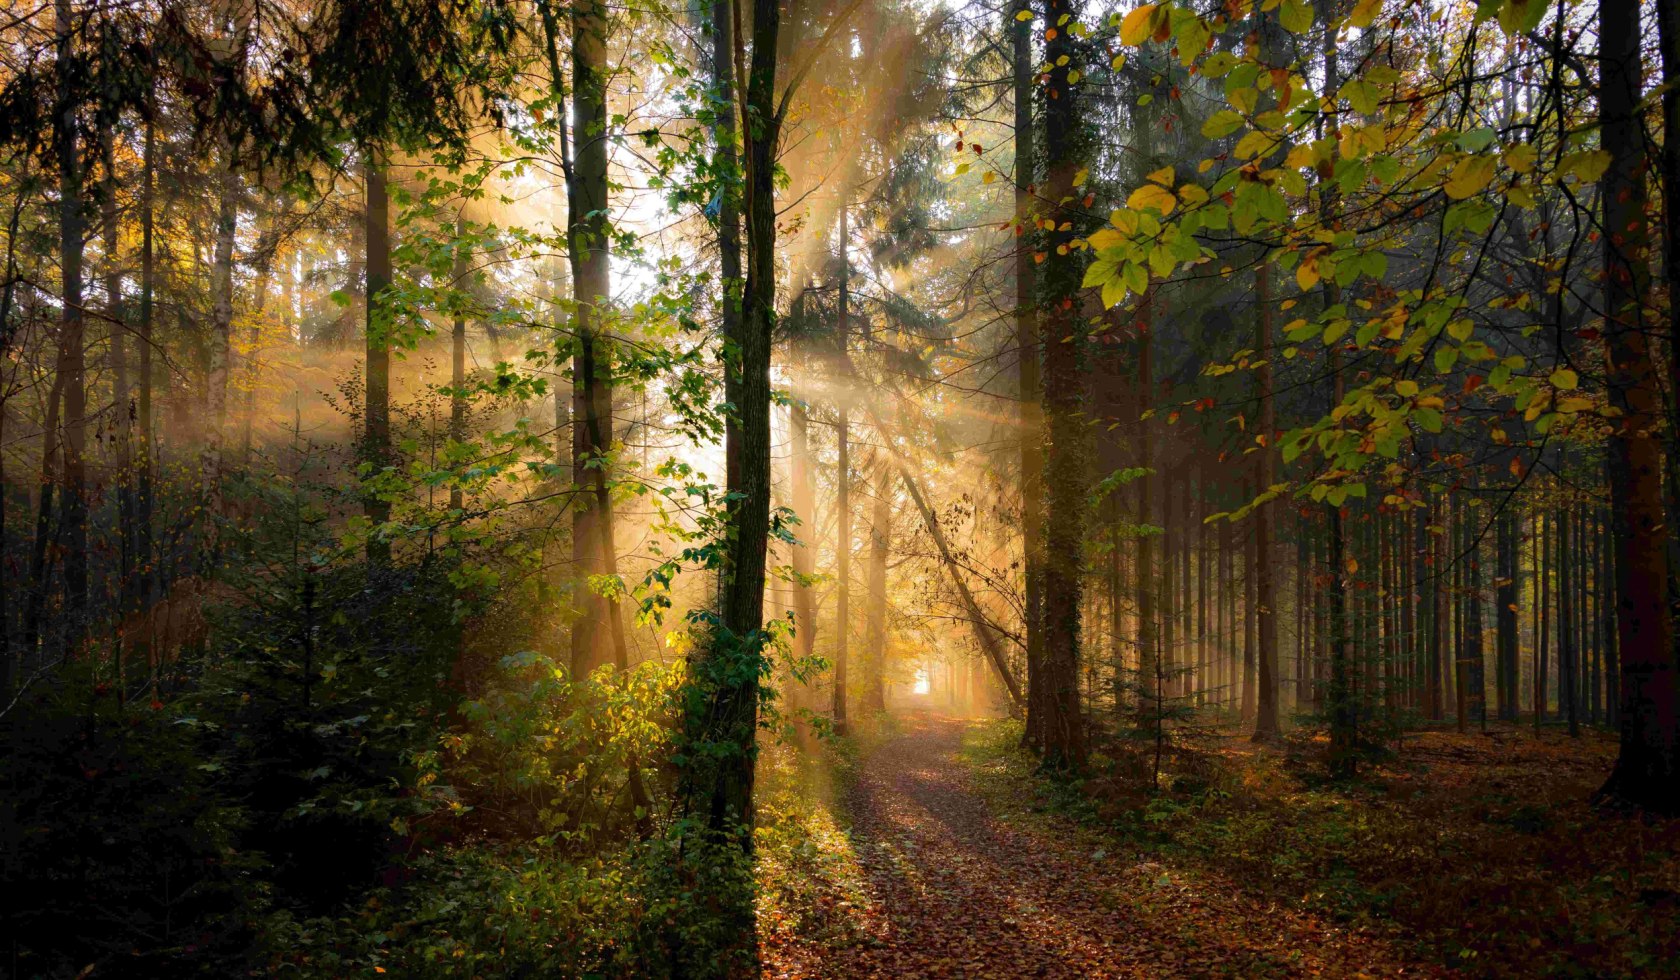 Forest, © Touristikverband Landkreis Rotenburg (Wümme) e.V. / Björn Wengler